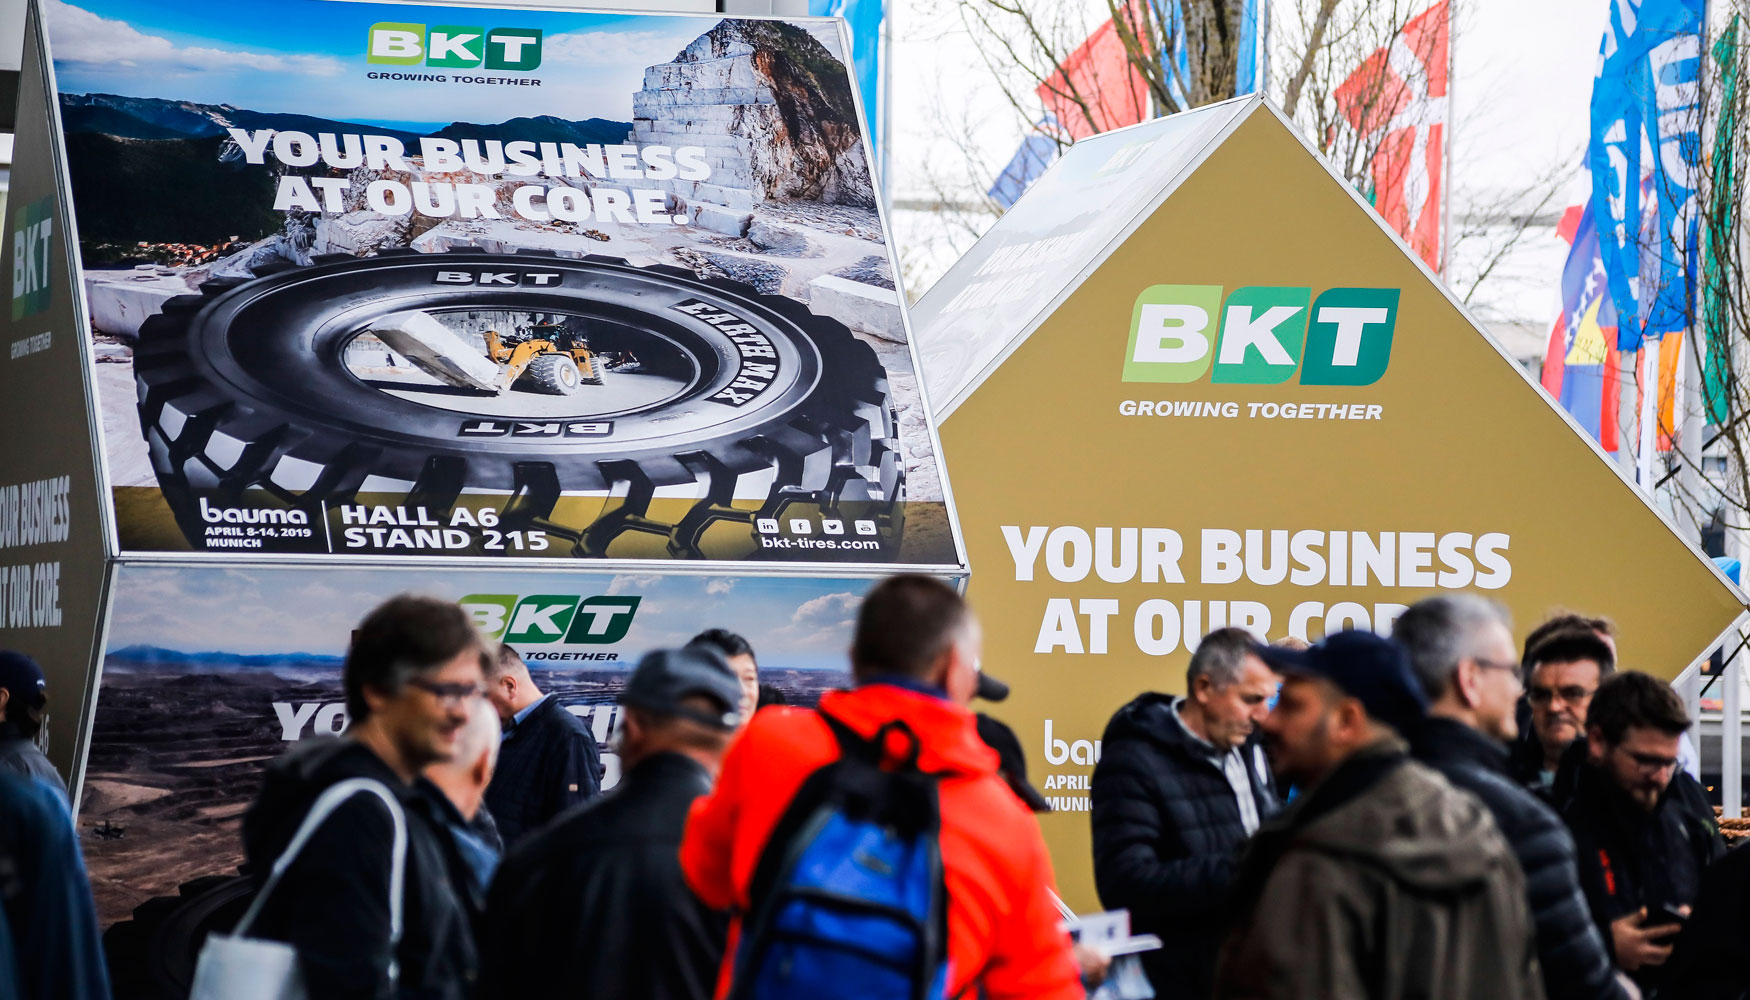 BKT tuvo una destacada presencia en Bauma 2019 promocionando su imagen y sus productos en diferentes puntos de la feria...